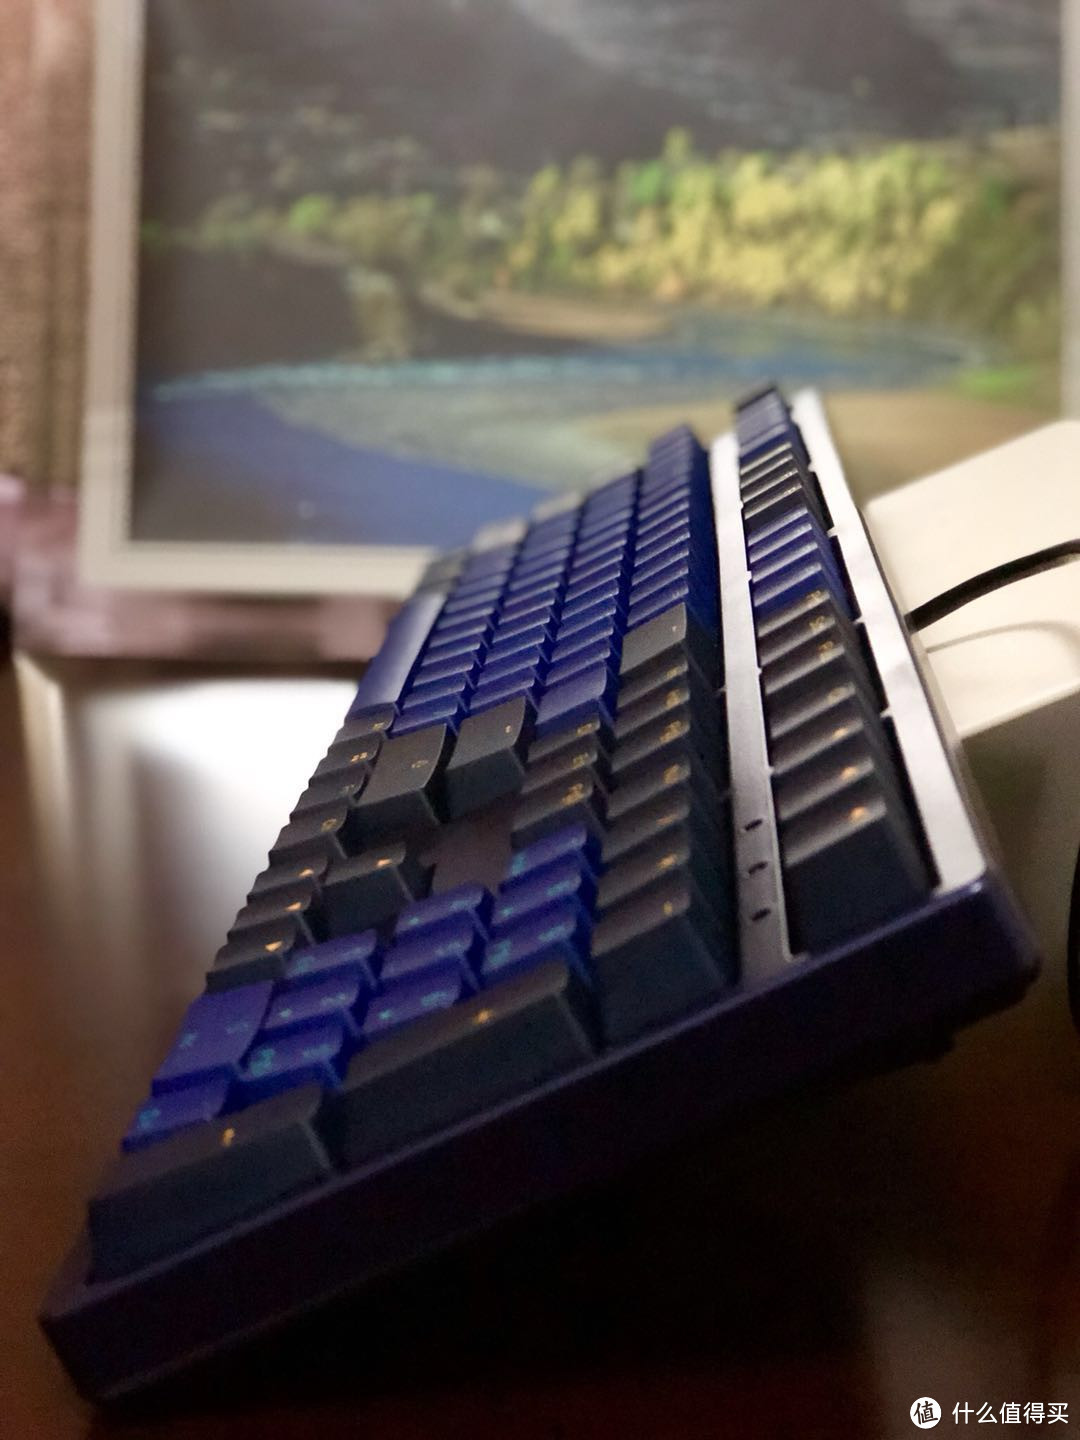 从游戏外设到生产力工具，中南油腻男的AKKO 艾酷 3108 Horizon地平线 机械键盘开箱